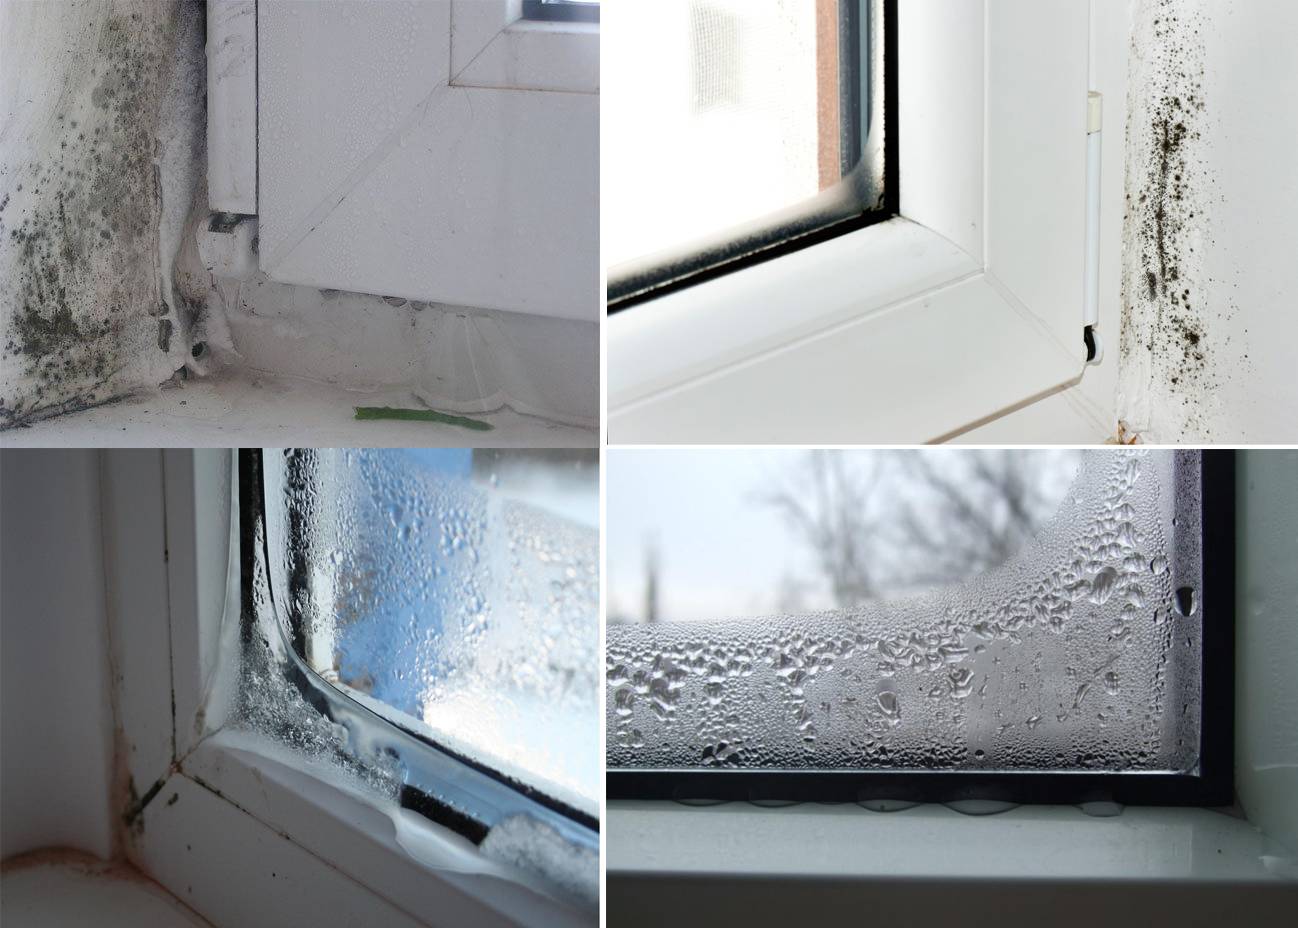 Что делать если потеют пластиковые окна в доме или квартире? причины появления конденсата. способы решения данной проблемы (фото & видео) +отзывы